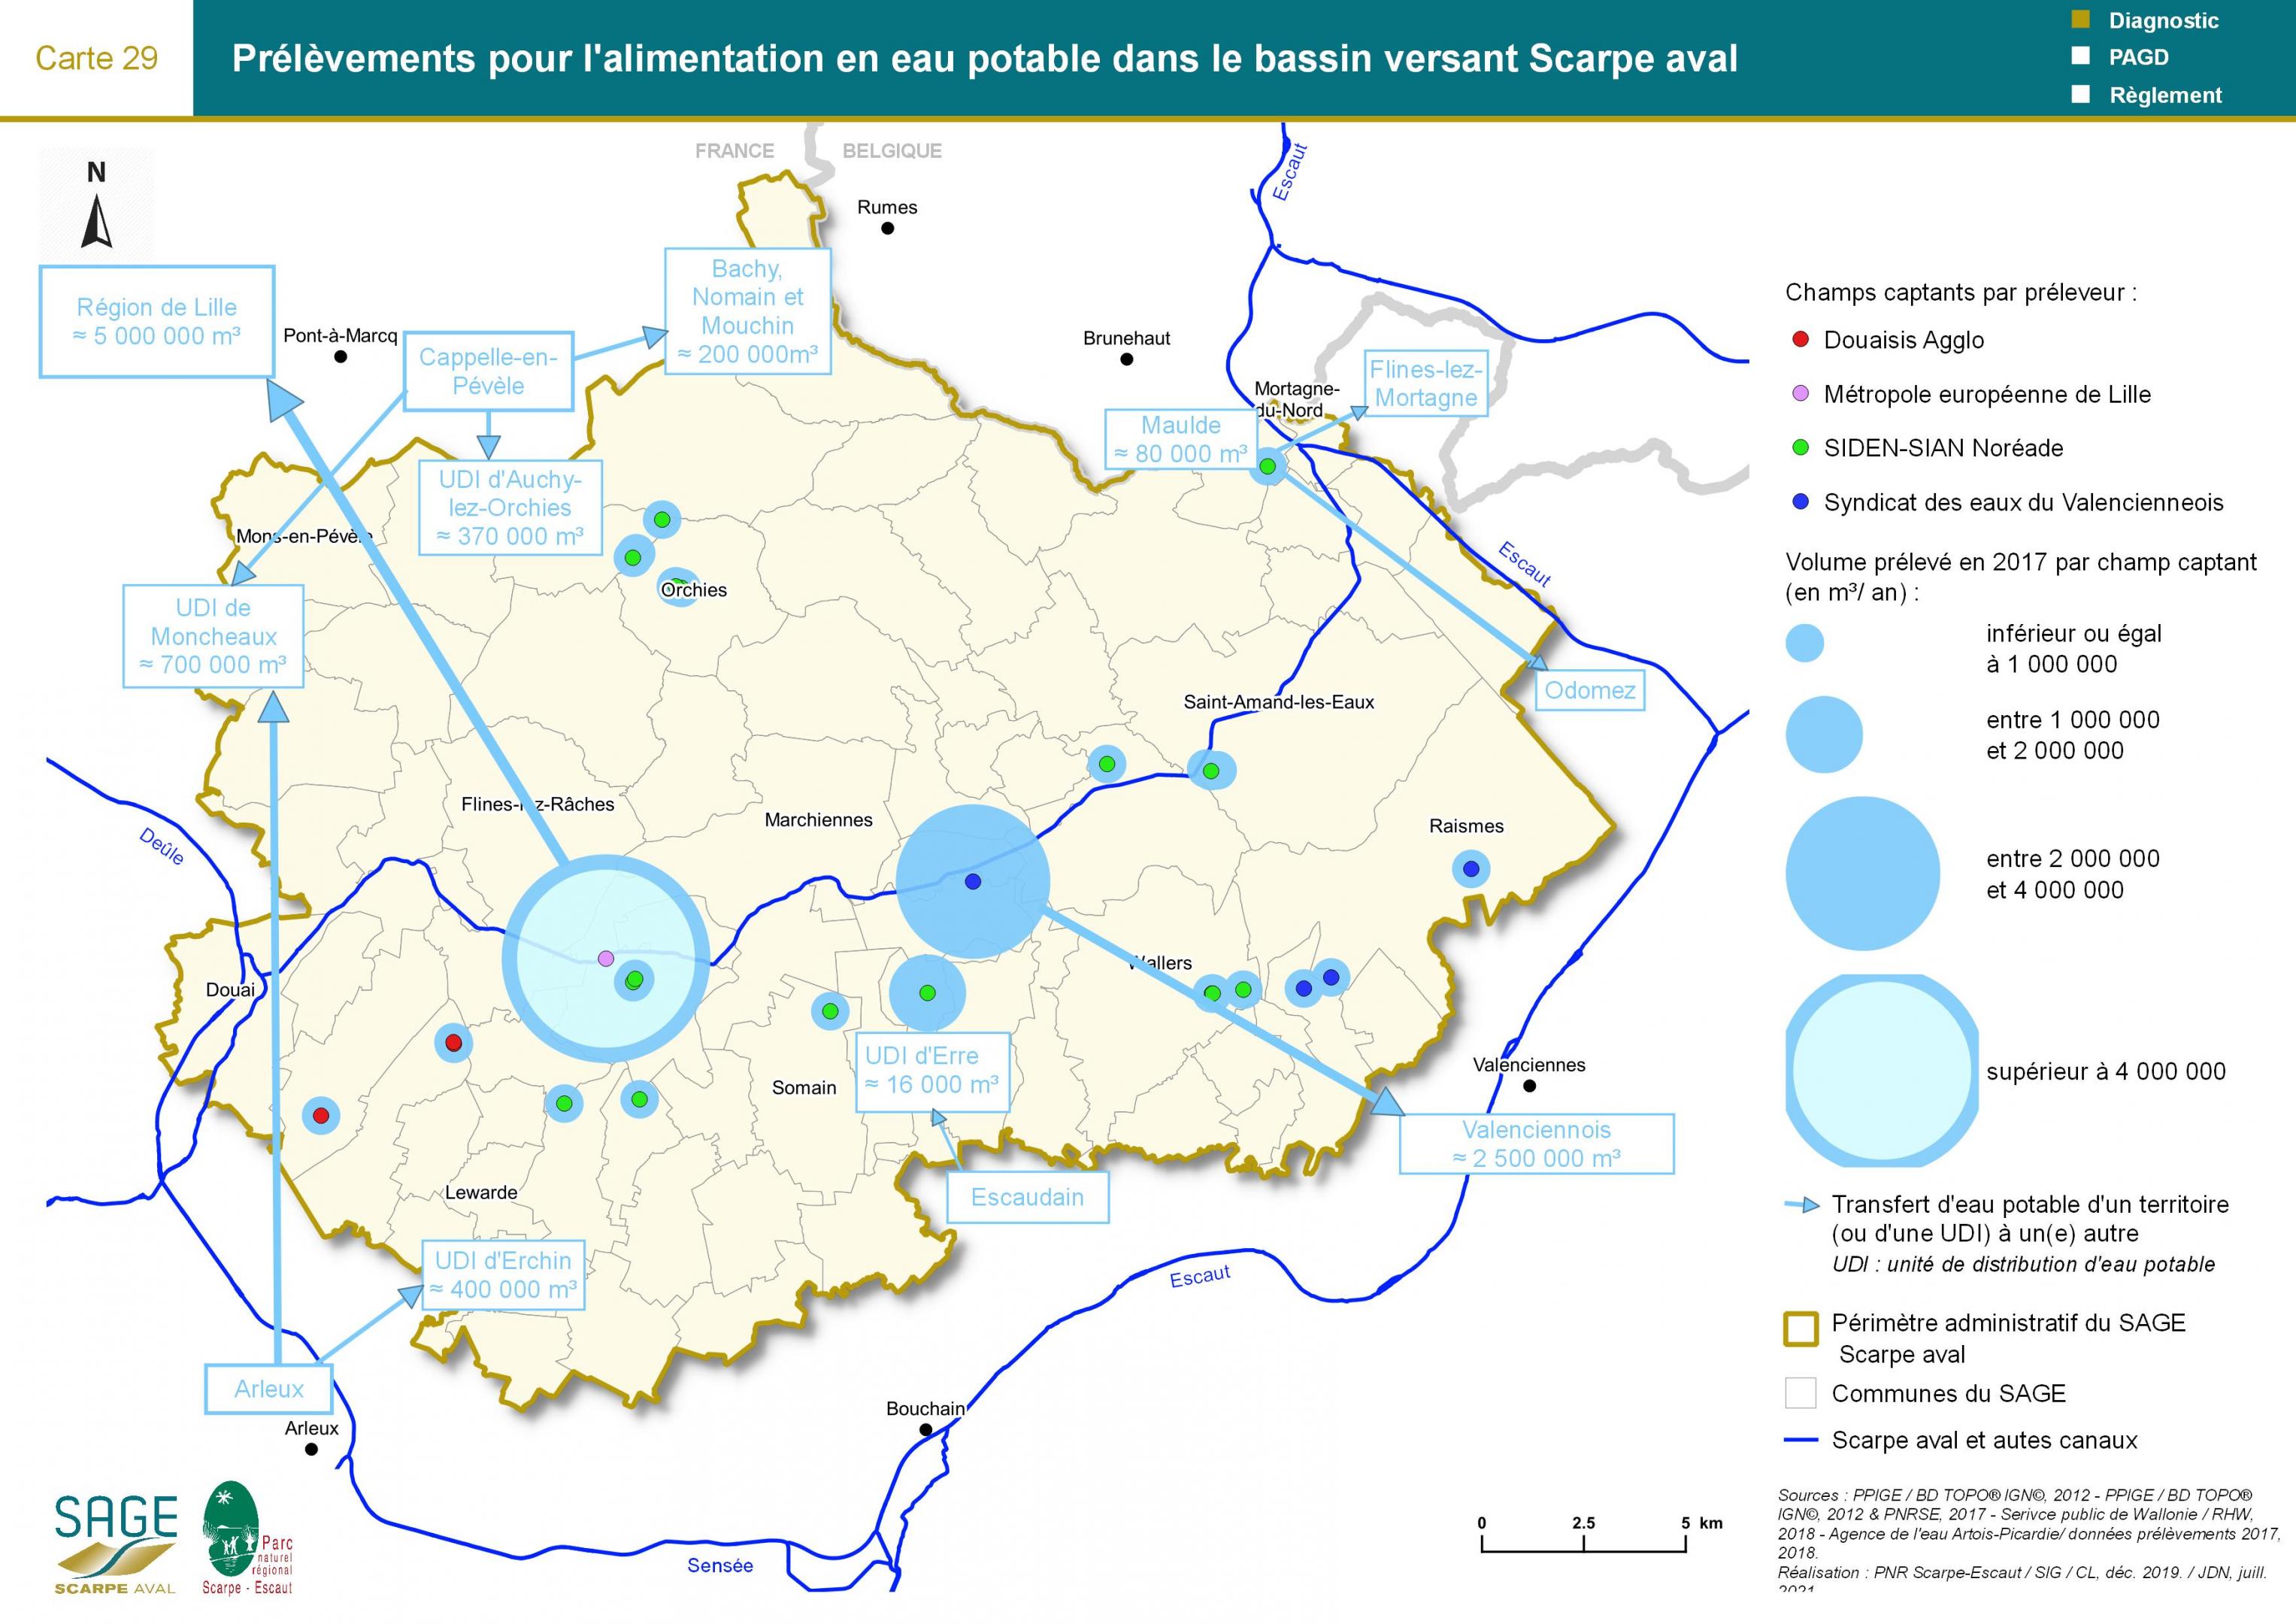 Etat des lieux - Carte 29 : Prélèvements pour l’alimentation en eau potable dans le bassin versant Scarpe aval